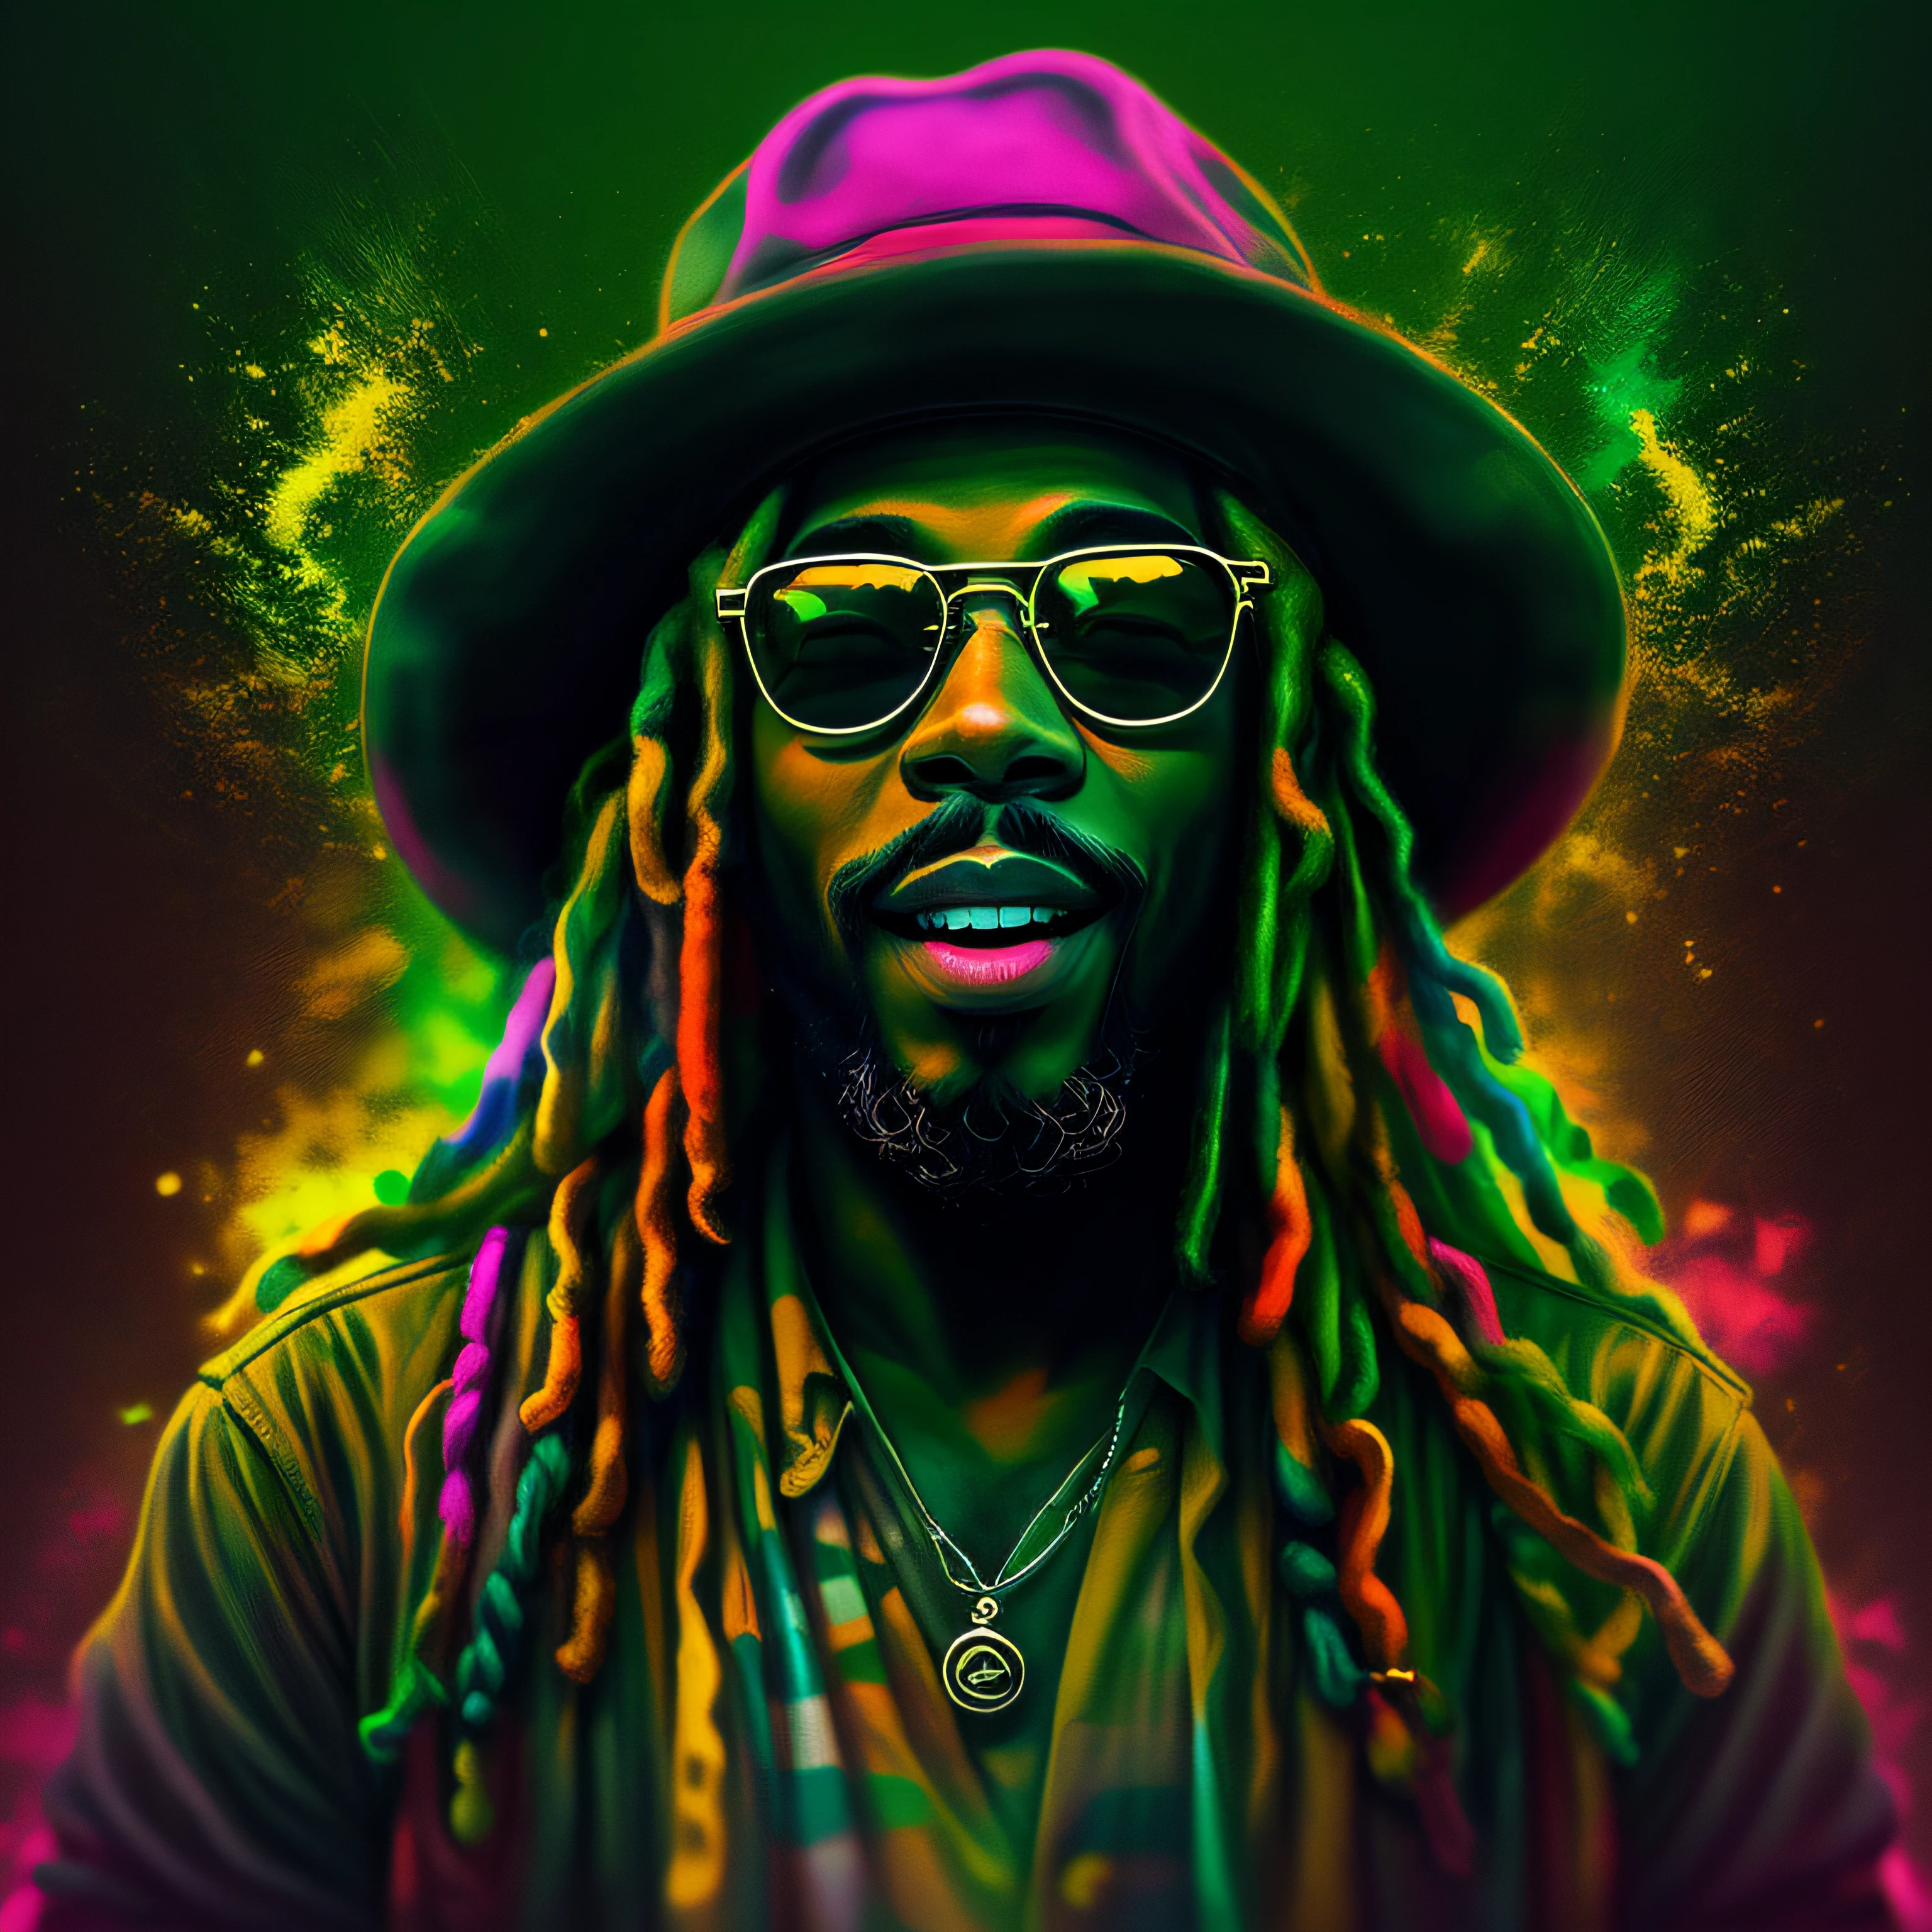 Vektorgrafiken, blur art (1blackRasta lächelt in reggaefarbener Kleidung) Mafia, Kinobeleuchtung im Neon-Stil, Tinte bespritzt